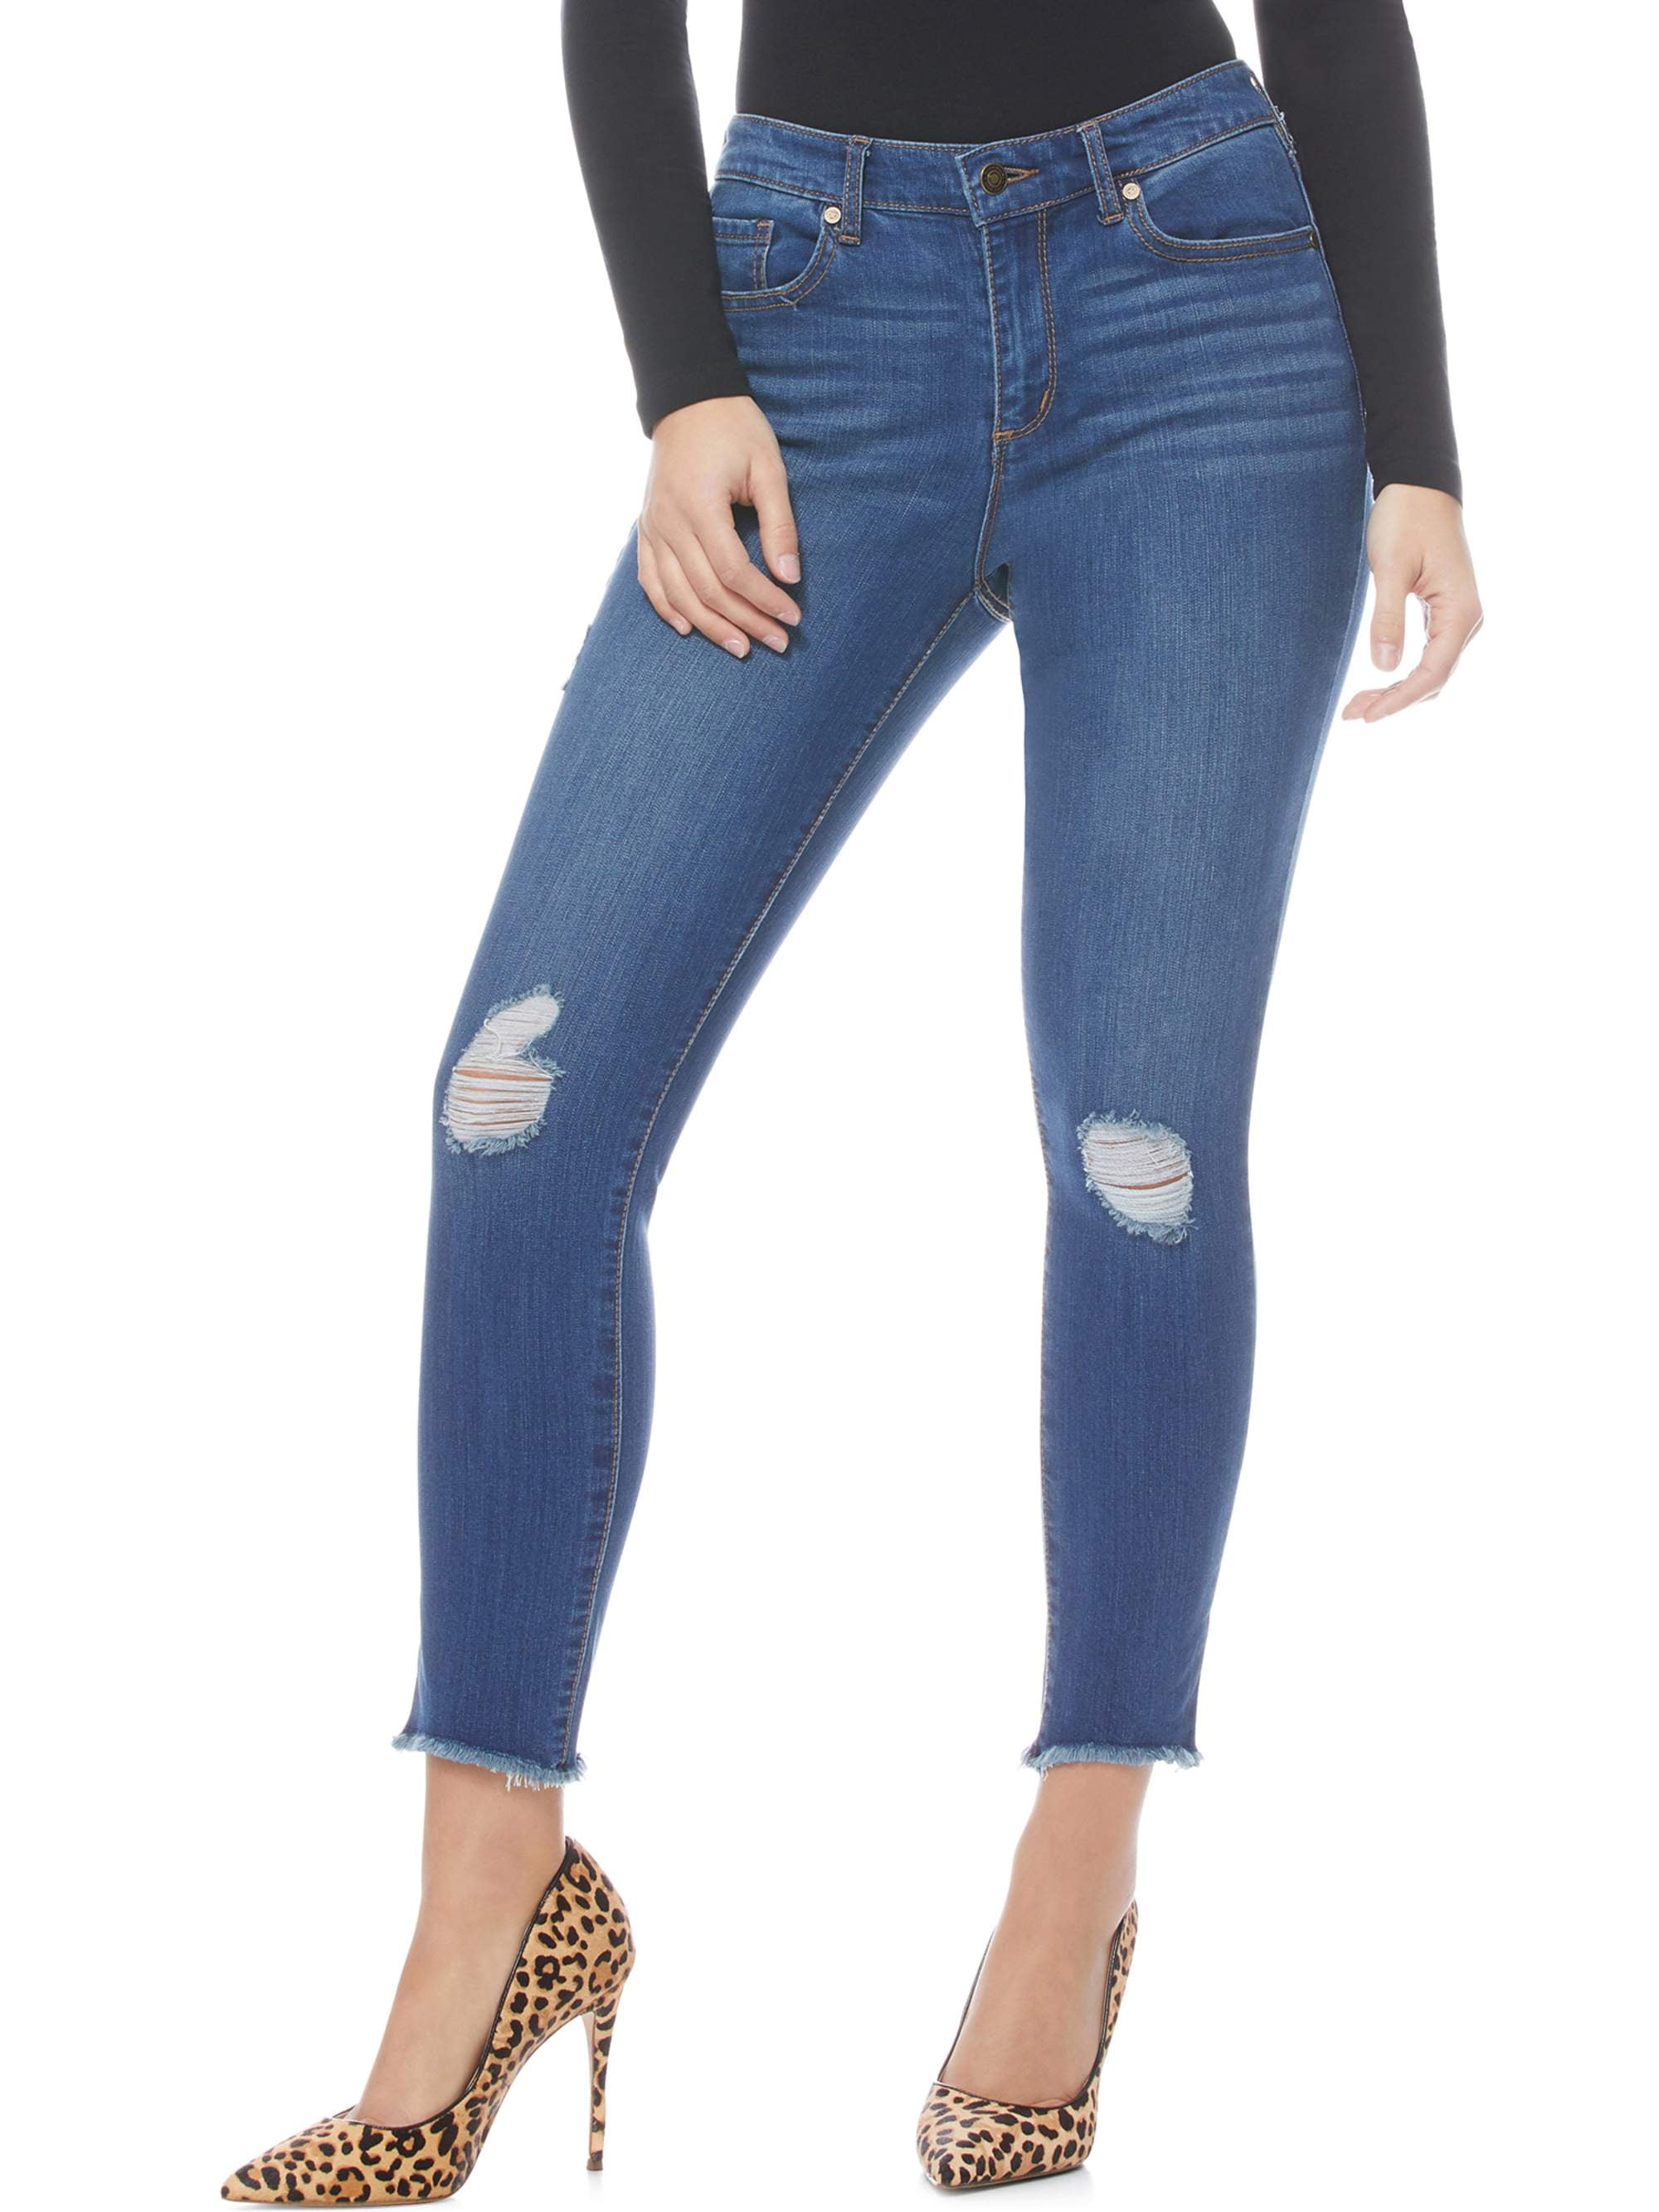 sophia jeans walmart